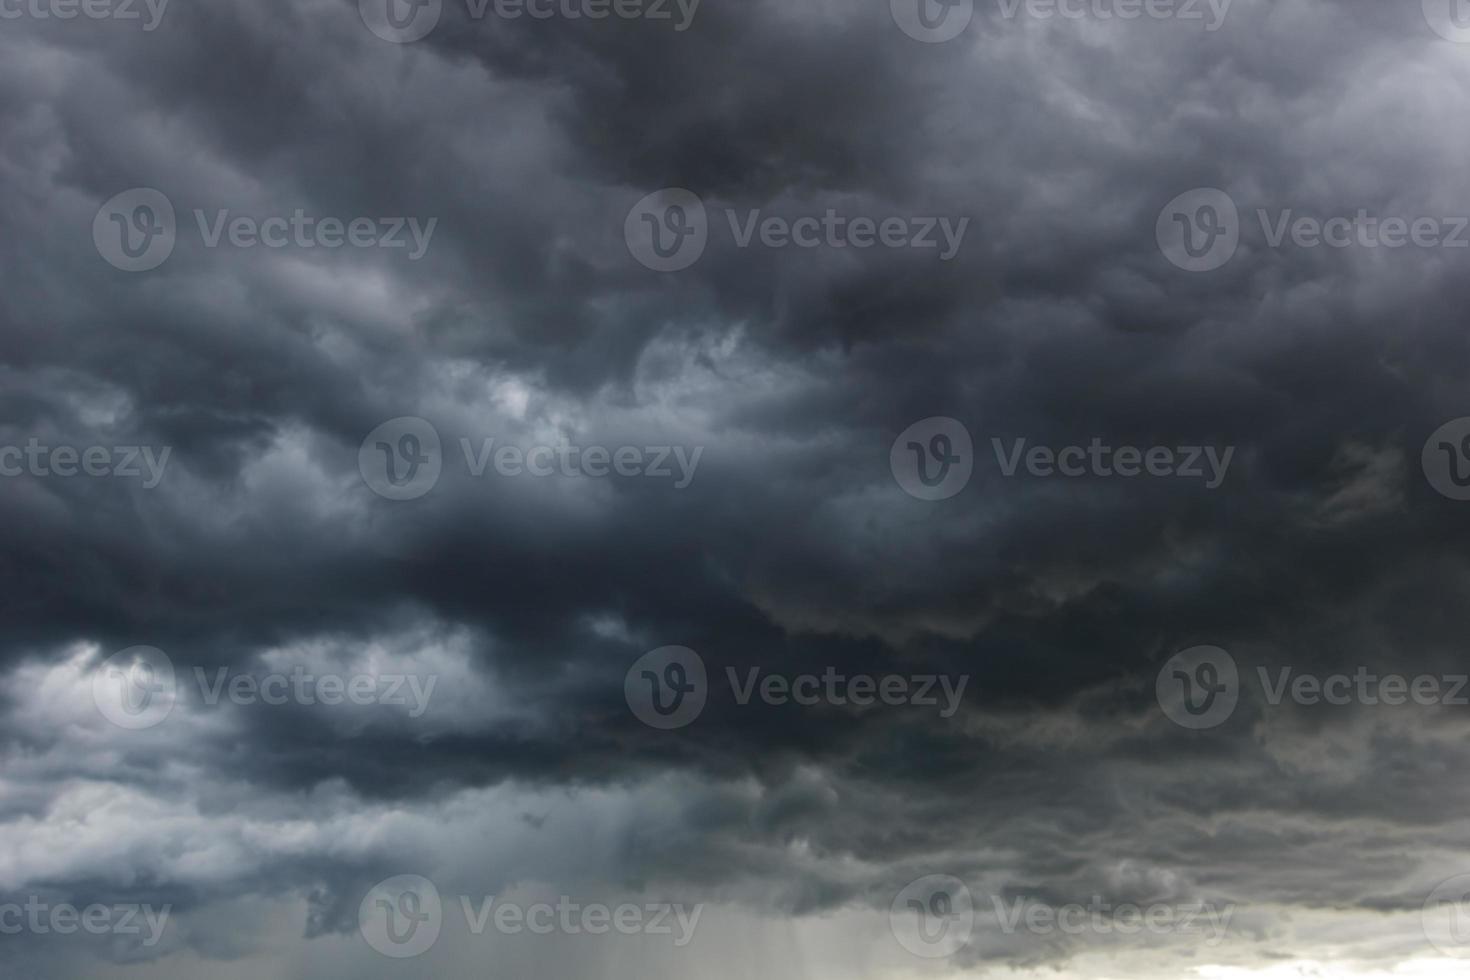 il cielo scuro con pesanti nuvole convergenti e una violenta tempesta prima del cielo di pioggia.maltempo. foto